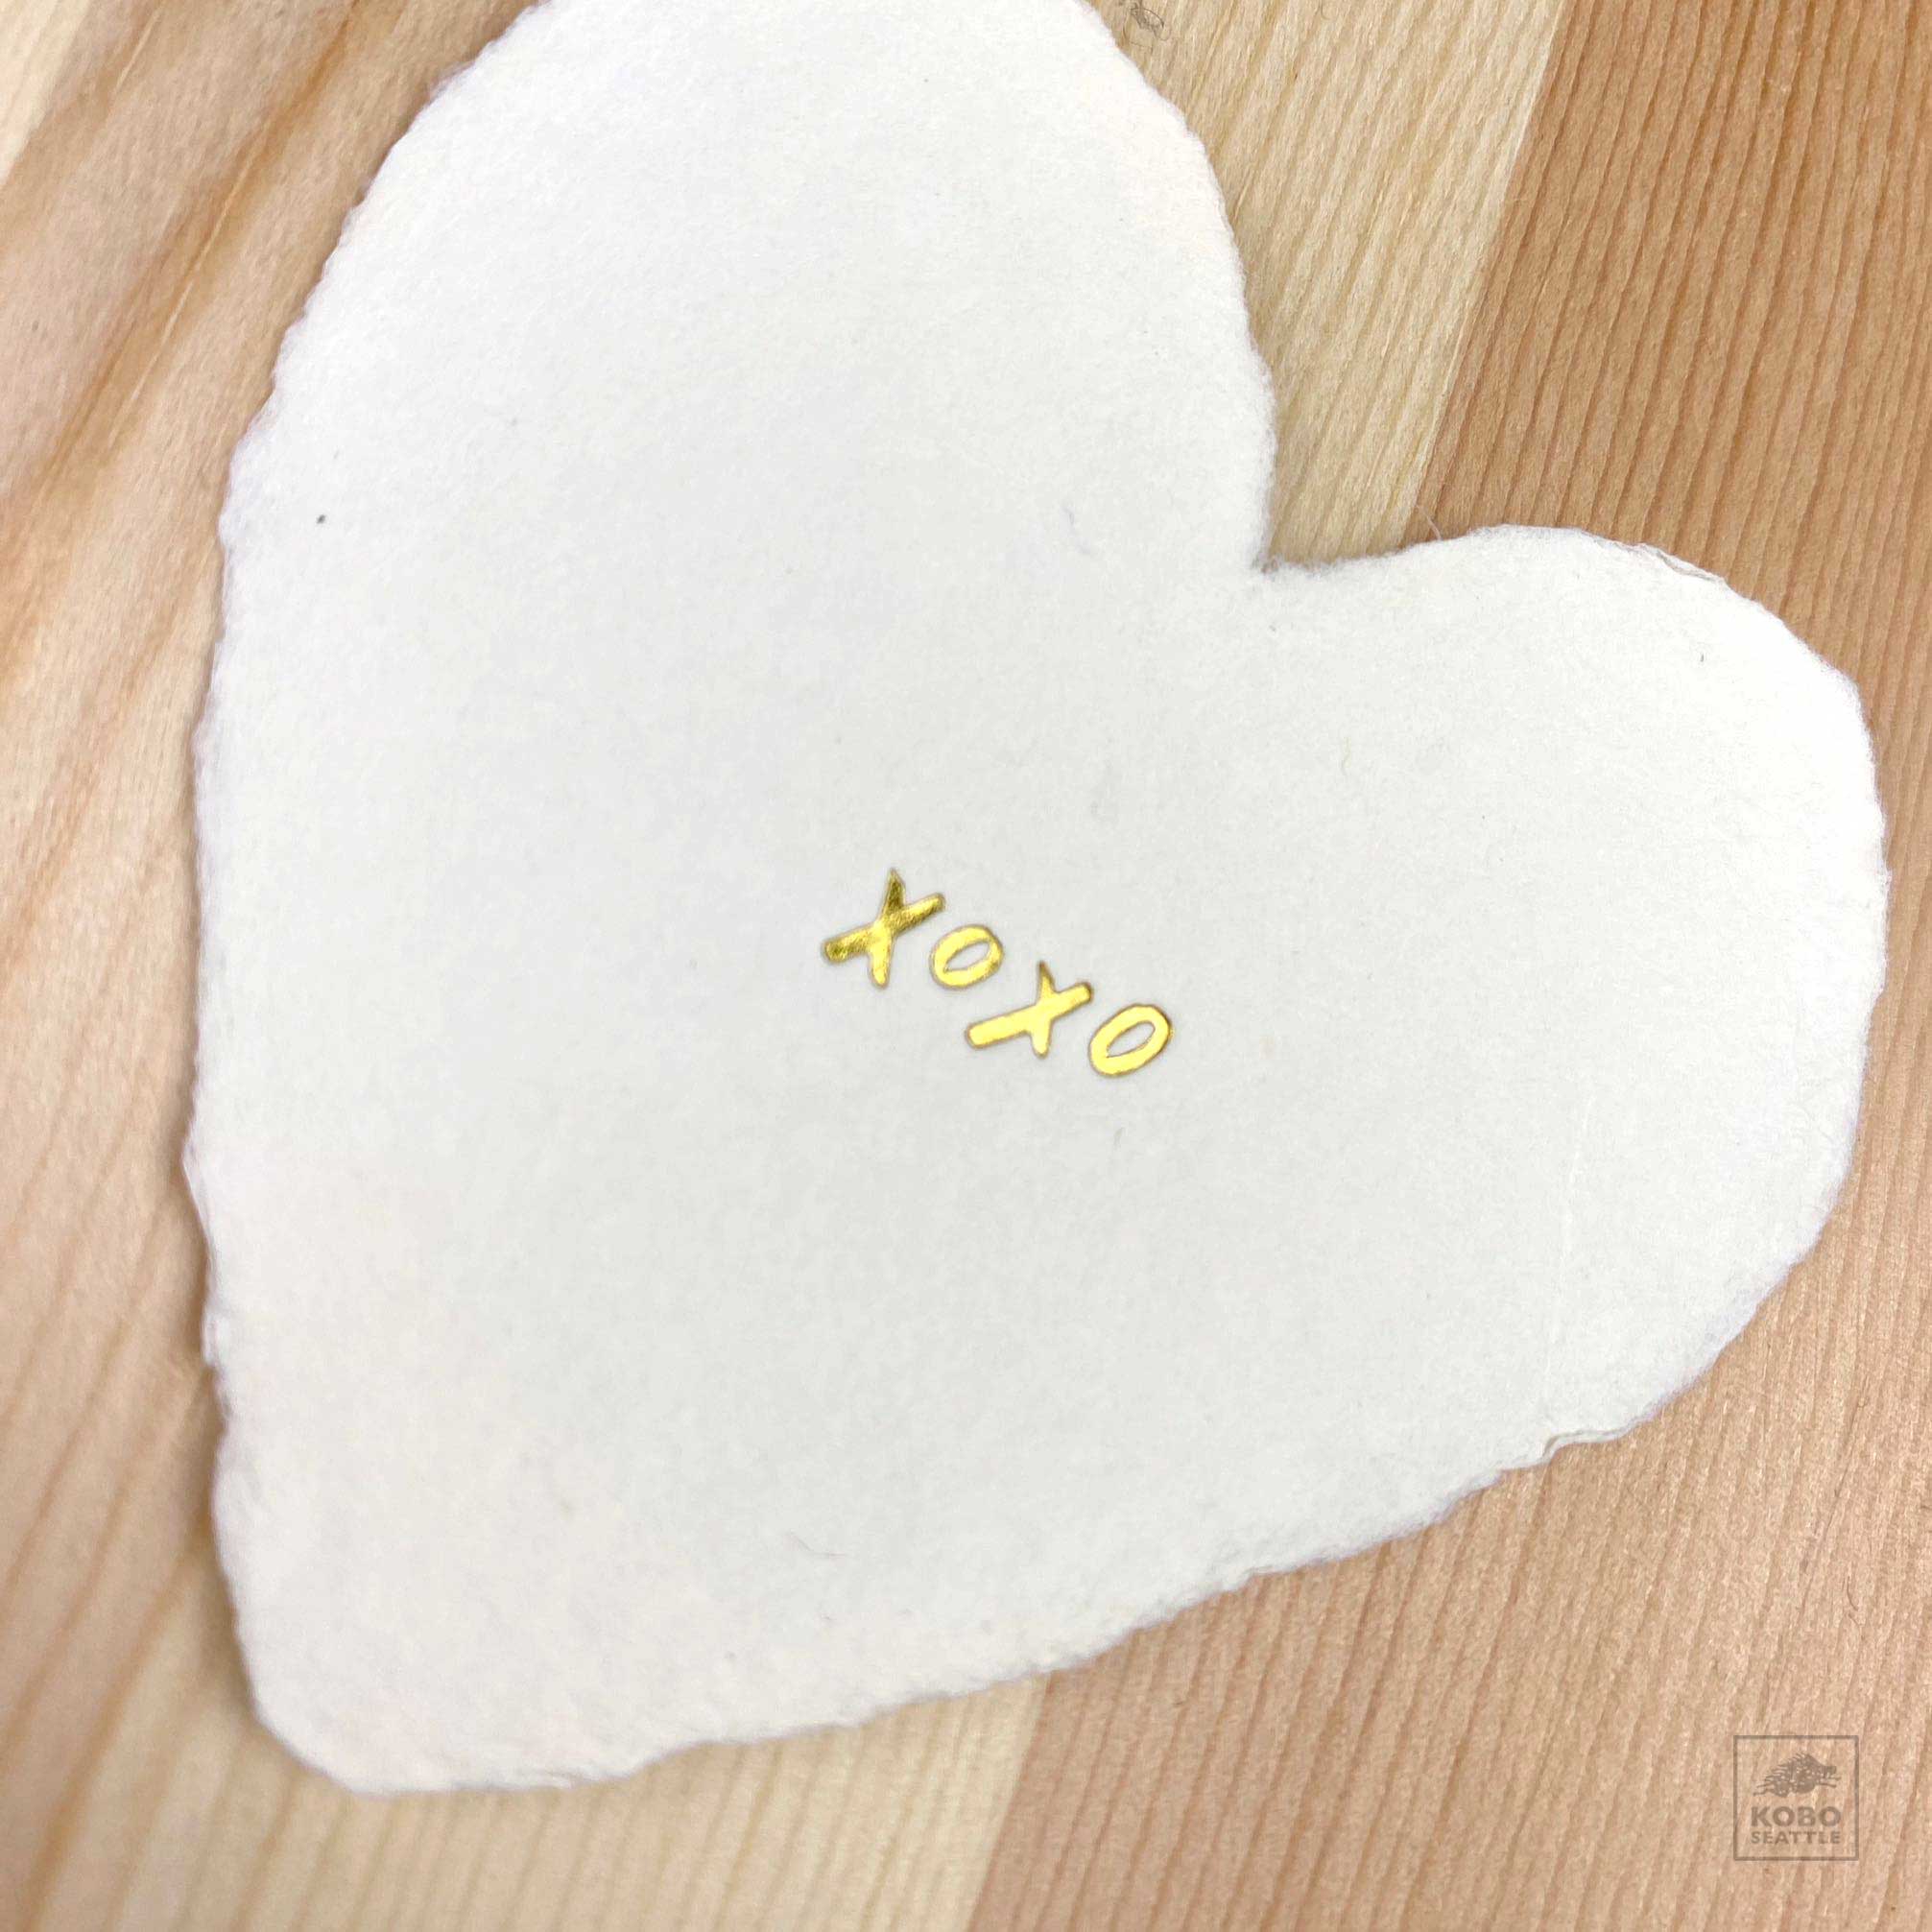 Paper Heart Cards - KoboSeattle